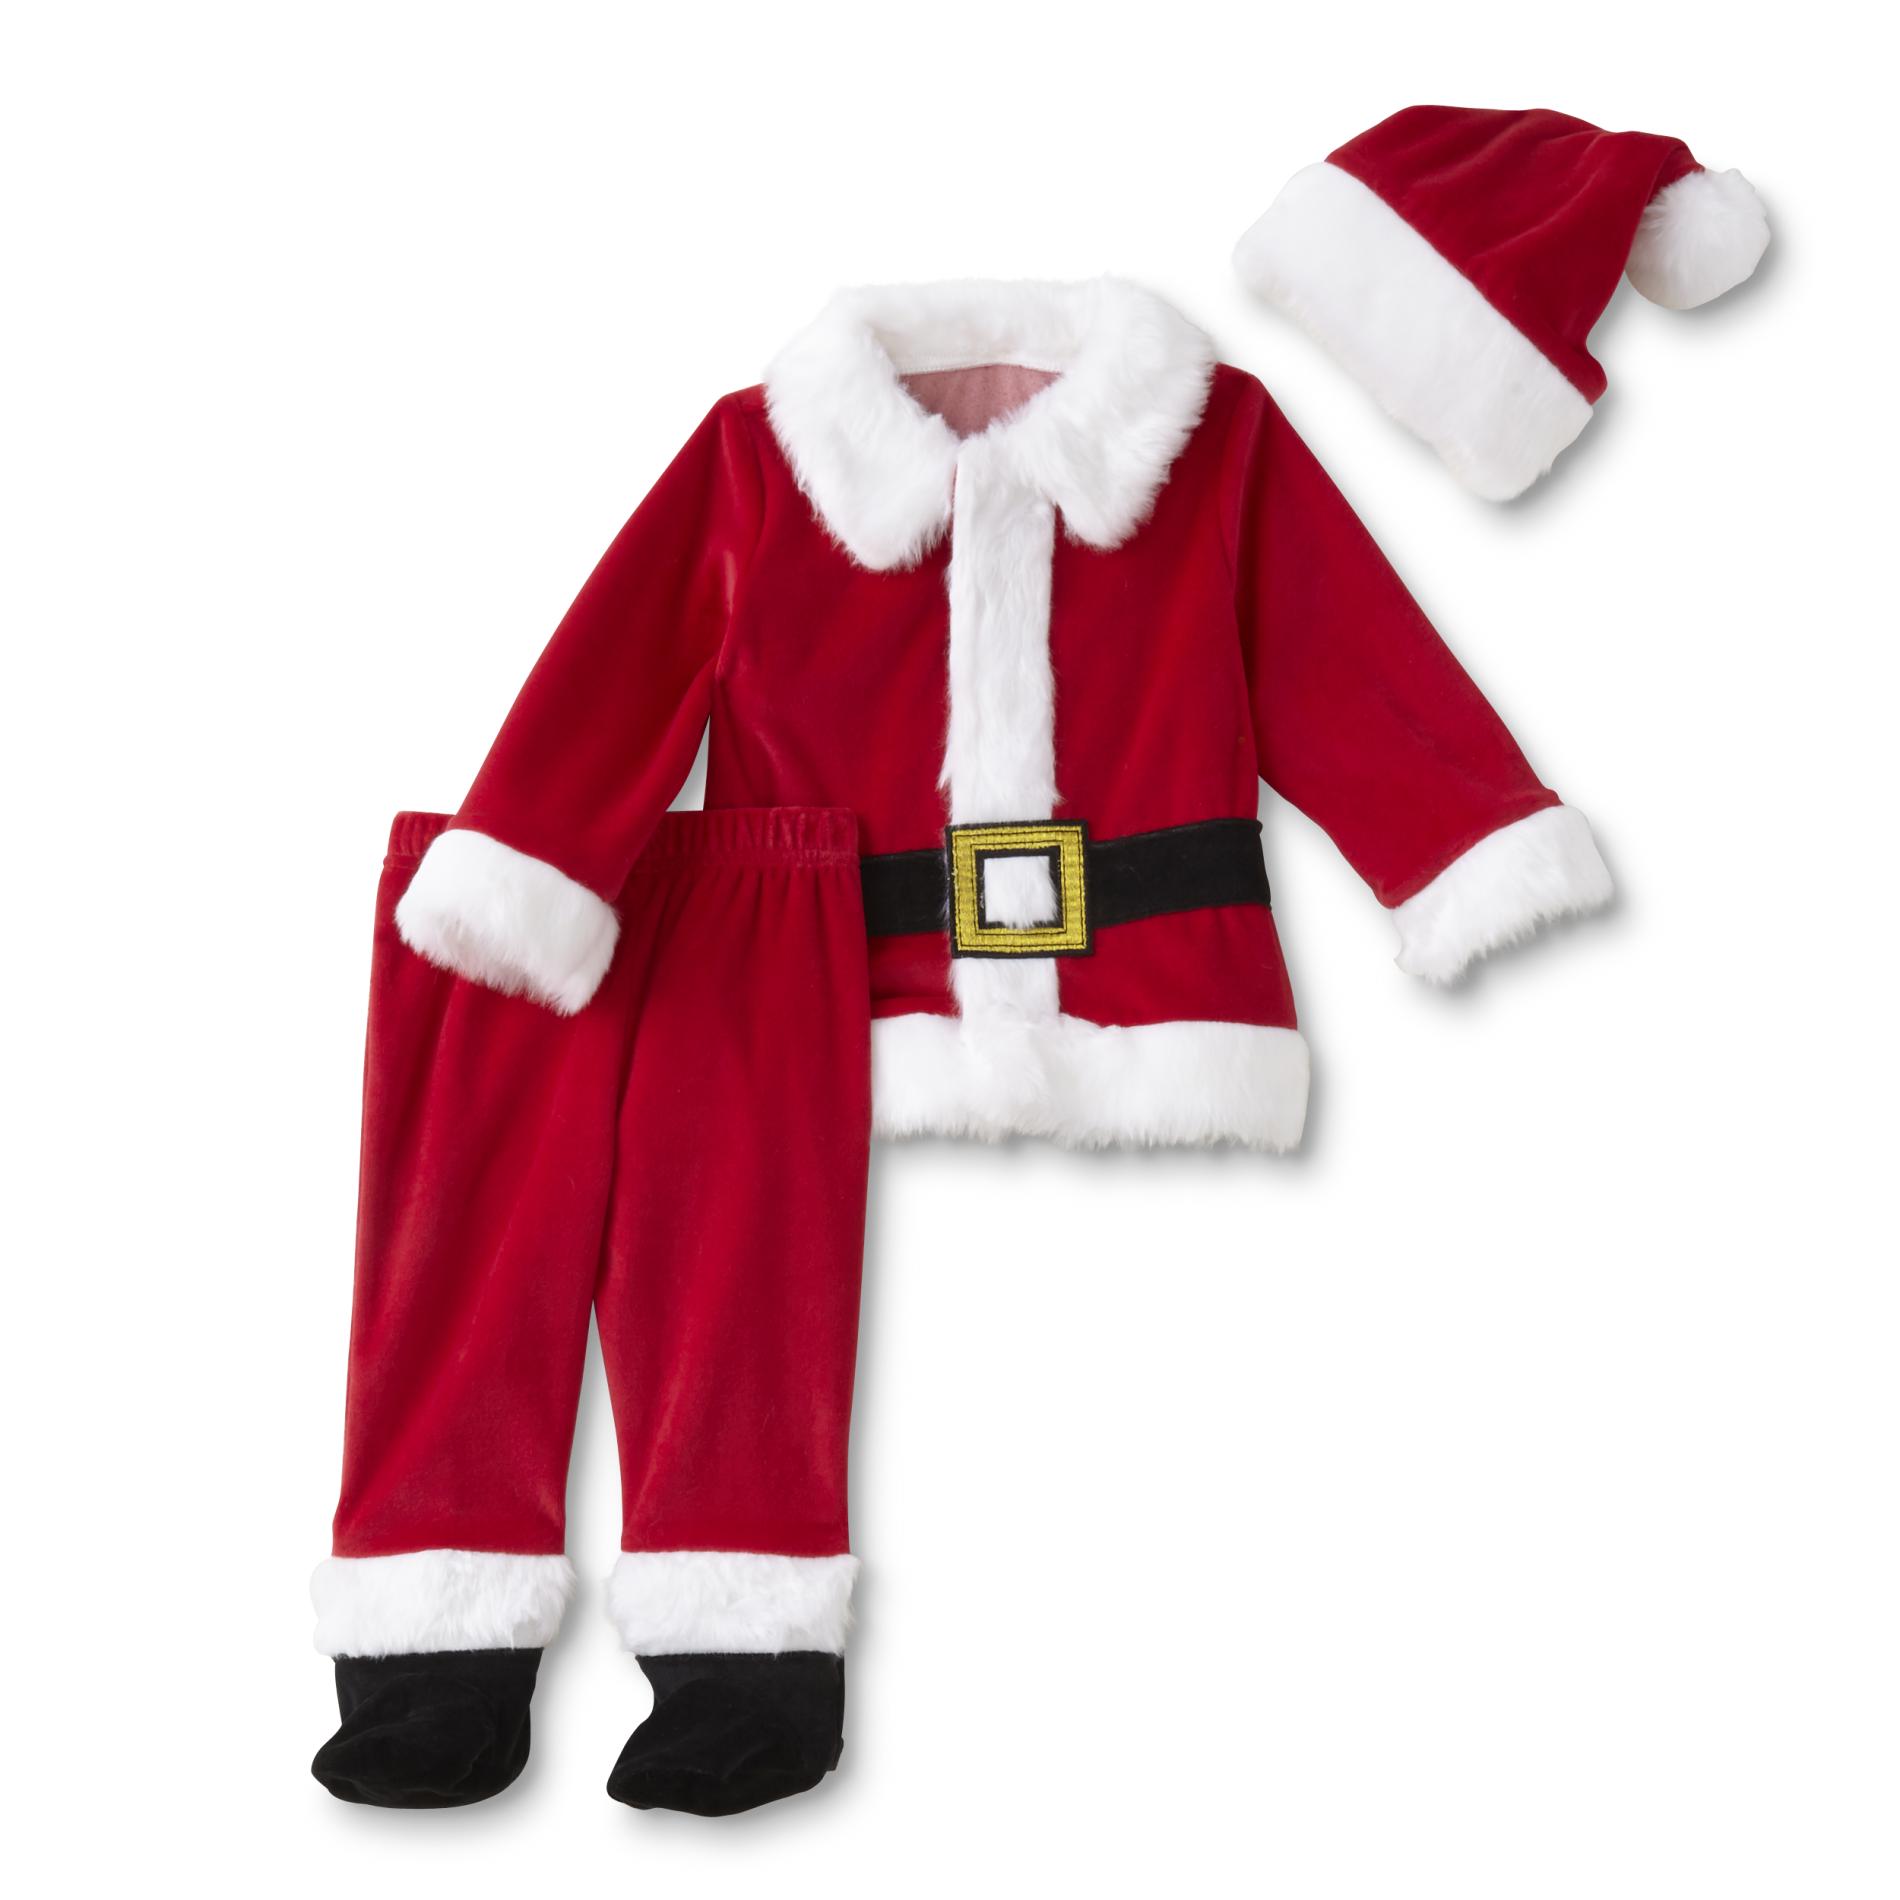 Little Wonders Newborn & Infant Boys' Santa Claus Suit & Hat